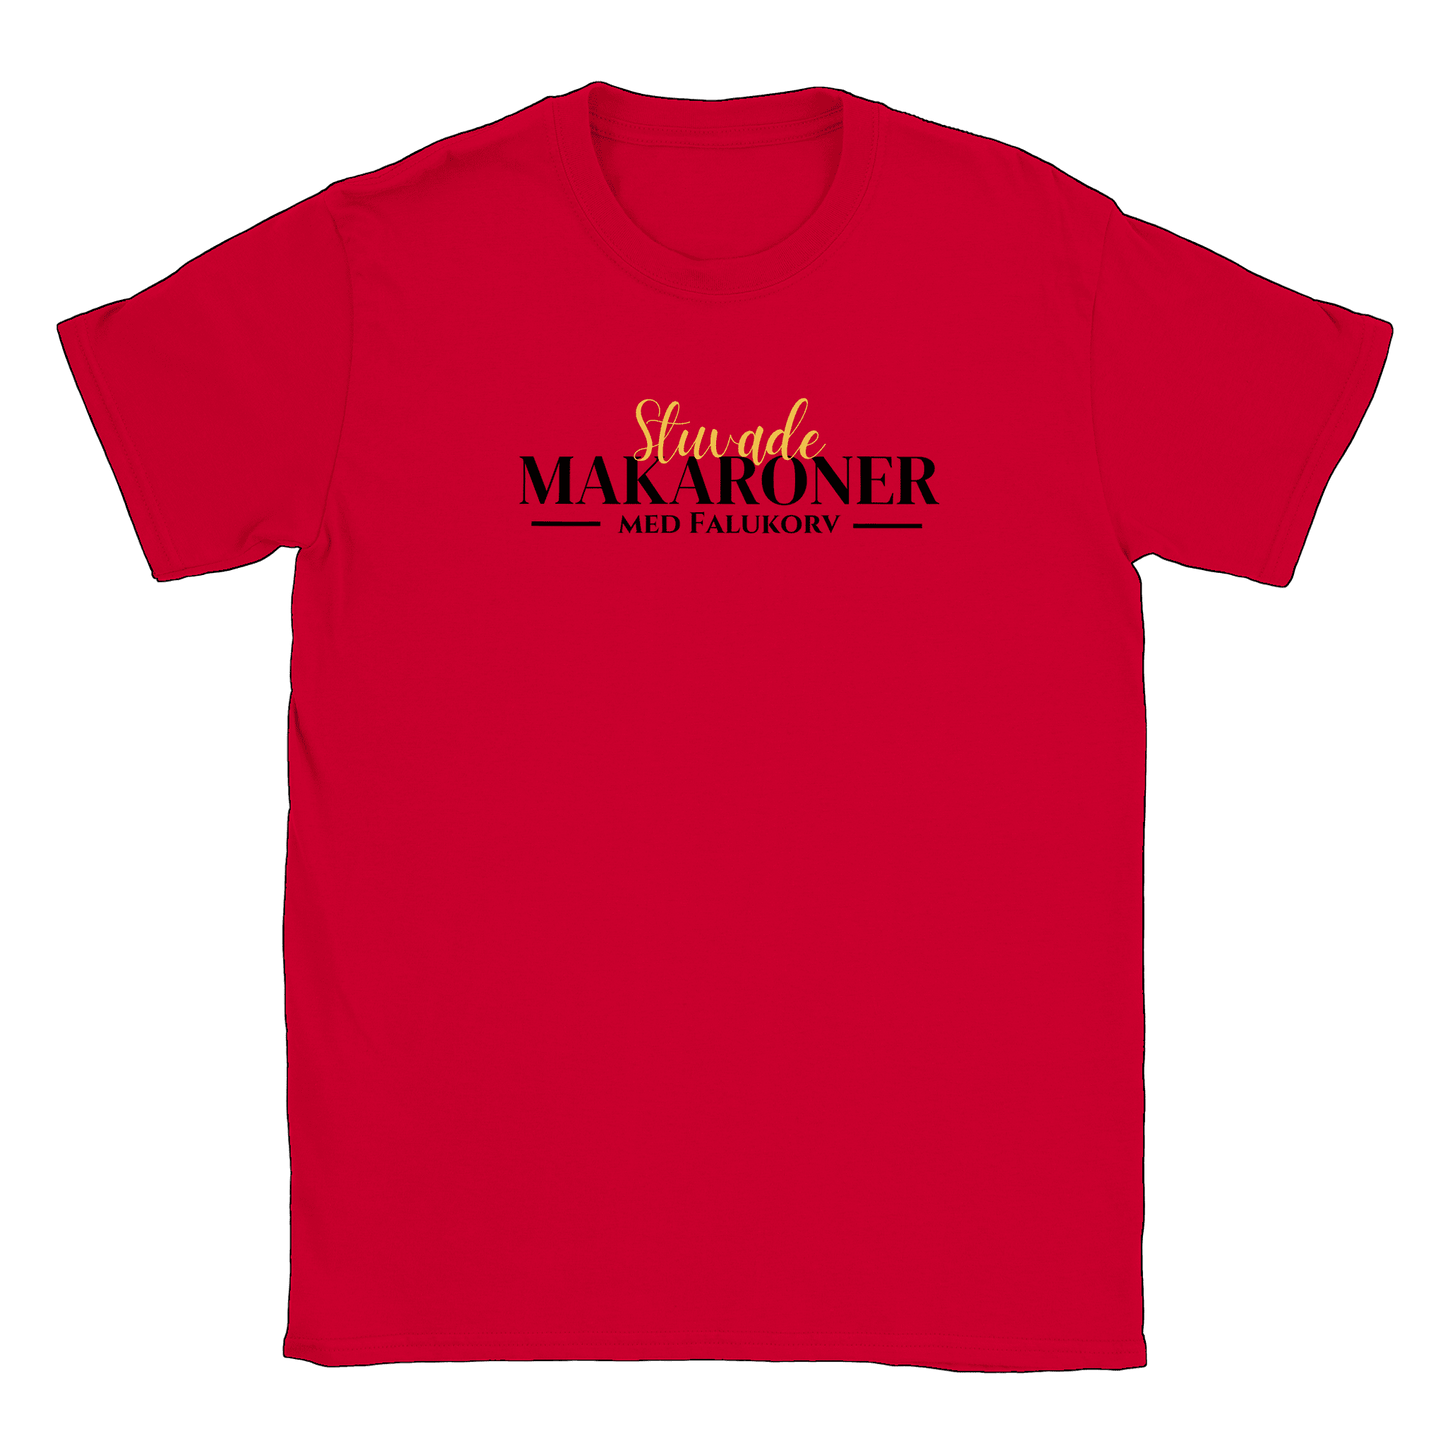 Stuvade makaroner med falukorv - T-shirt Röd